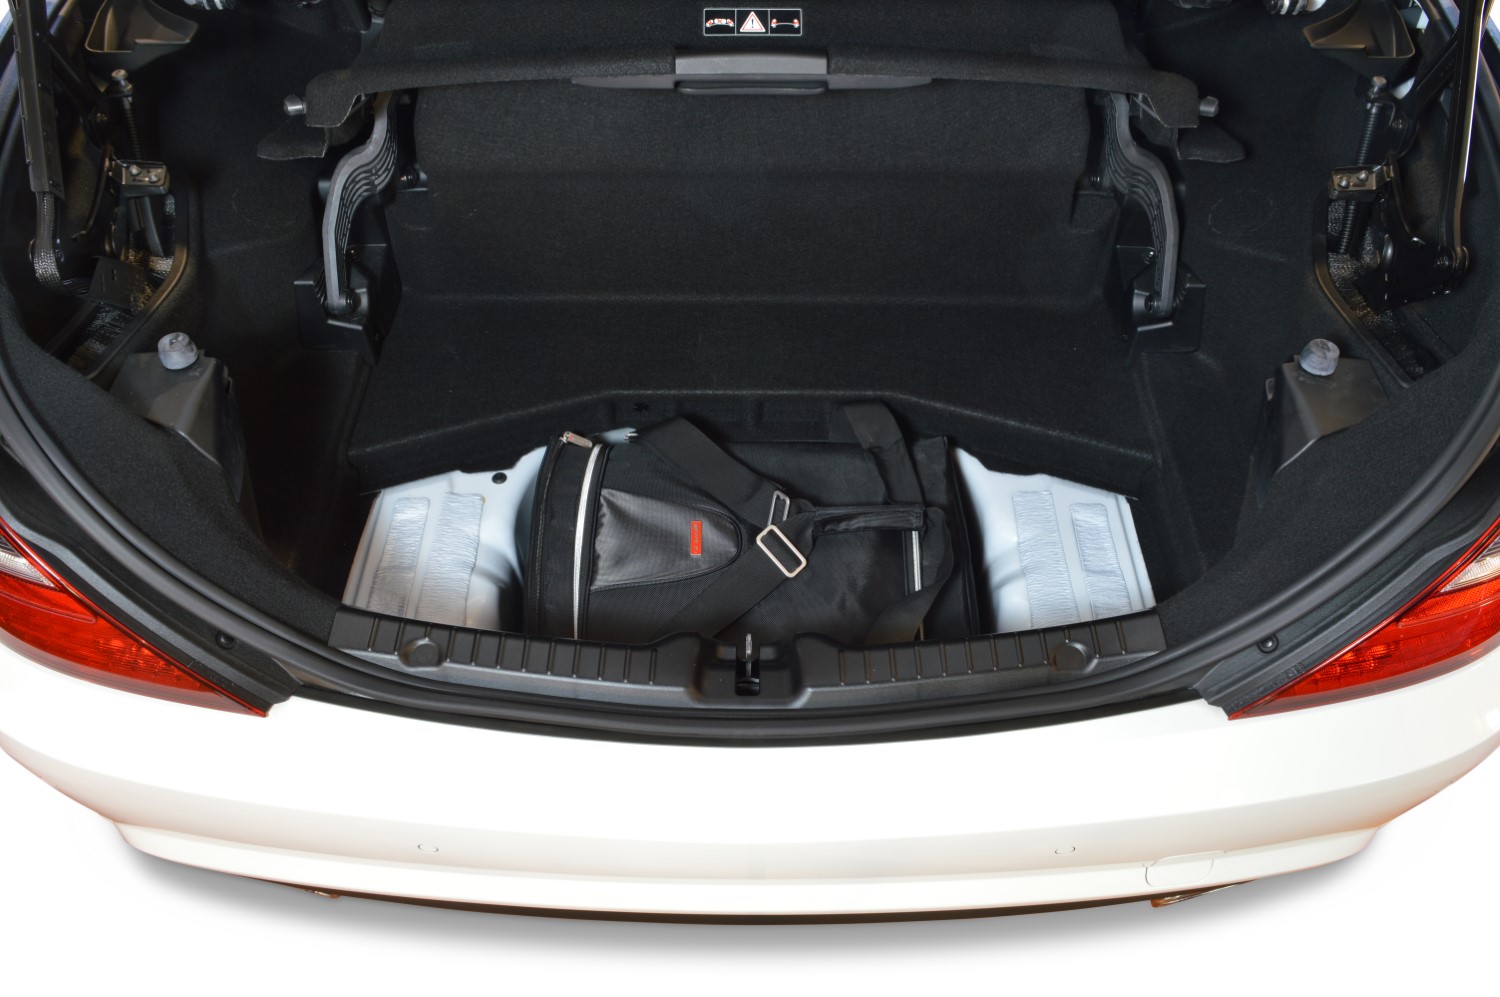 SLK Luggage Rack - Three Options For All SLK Models